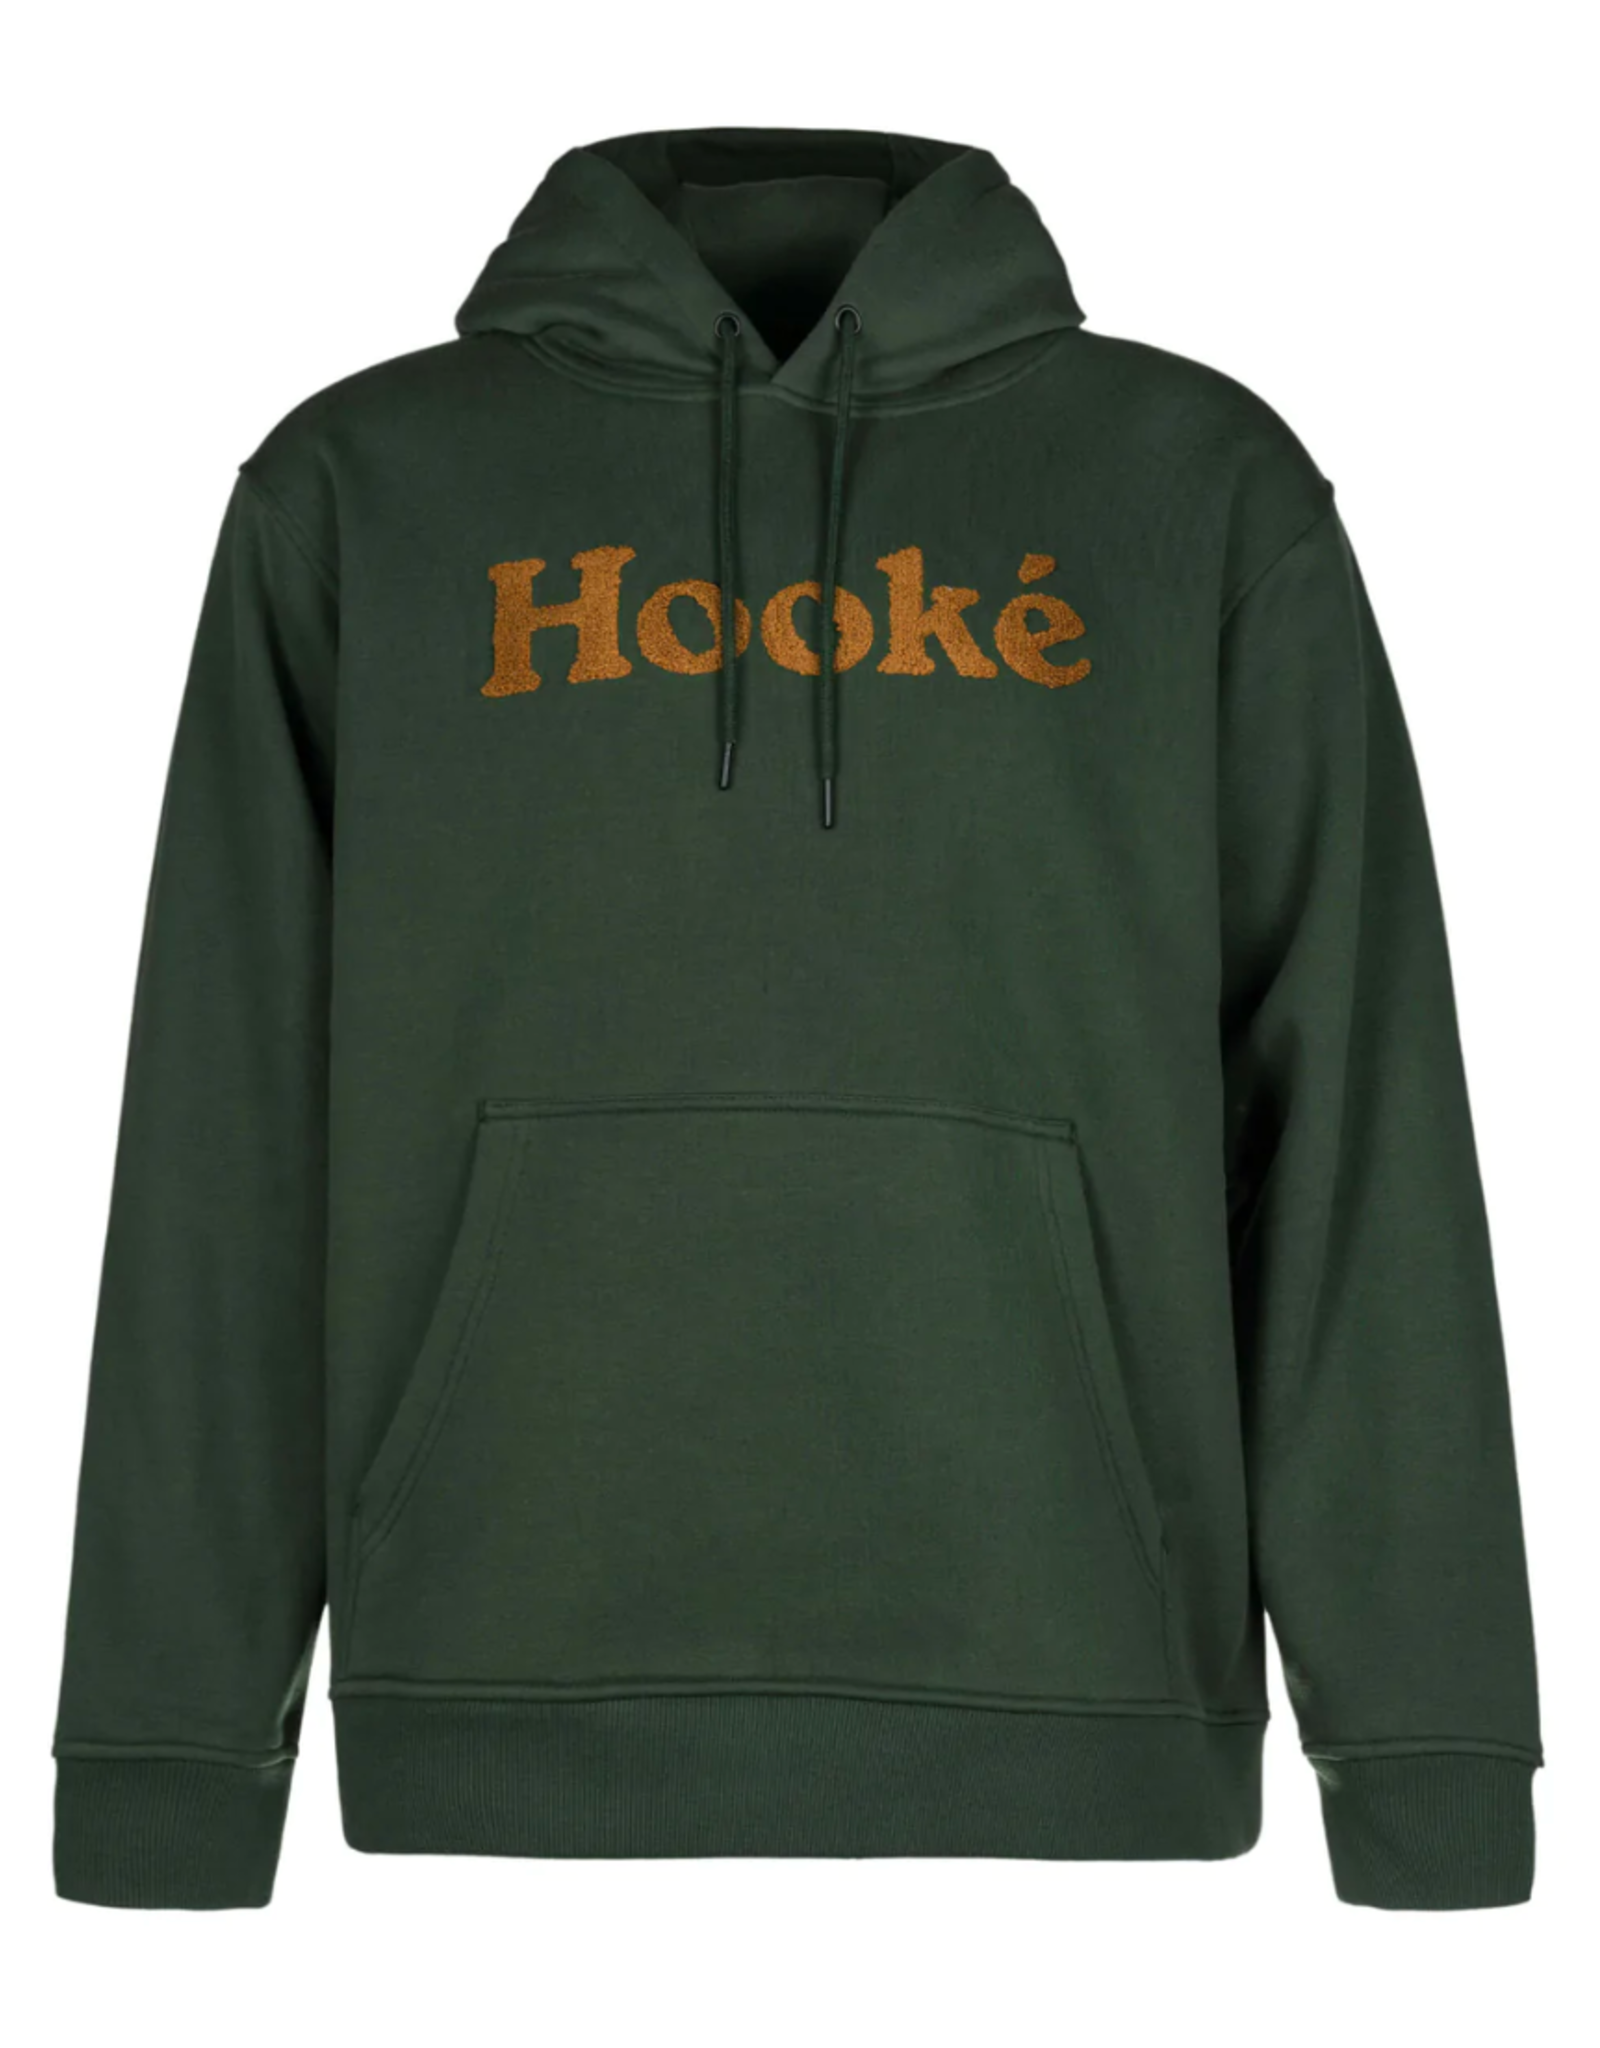 Hooké Hooké M's Signature Hoodie